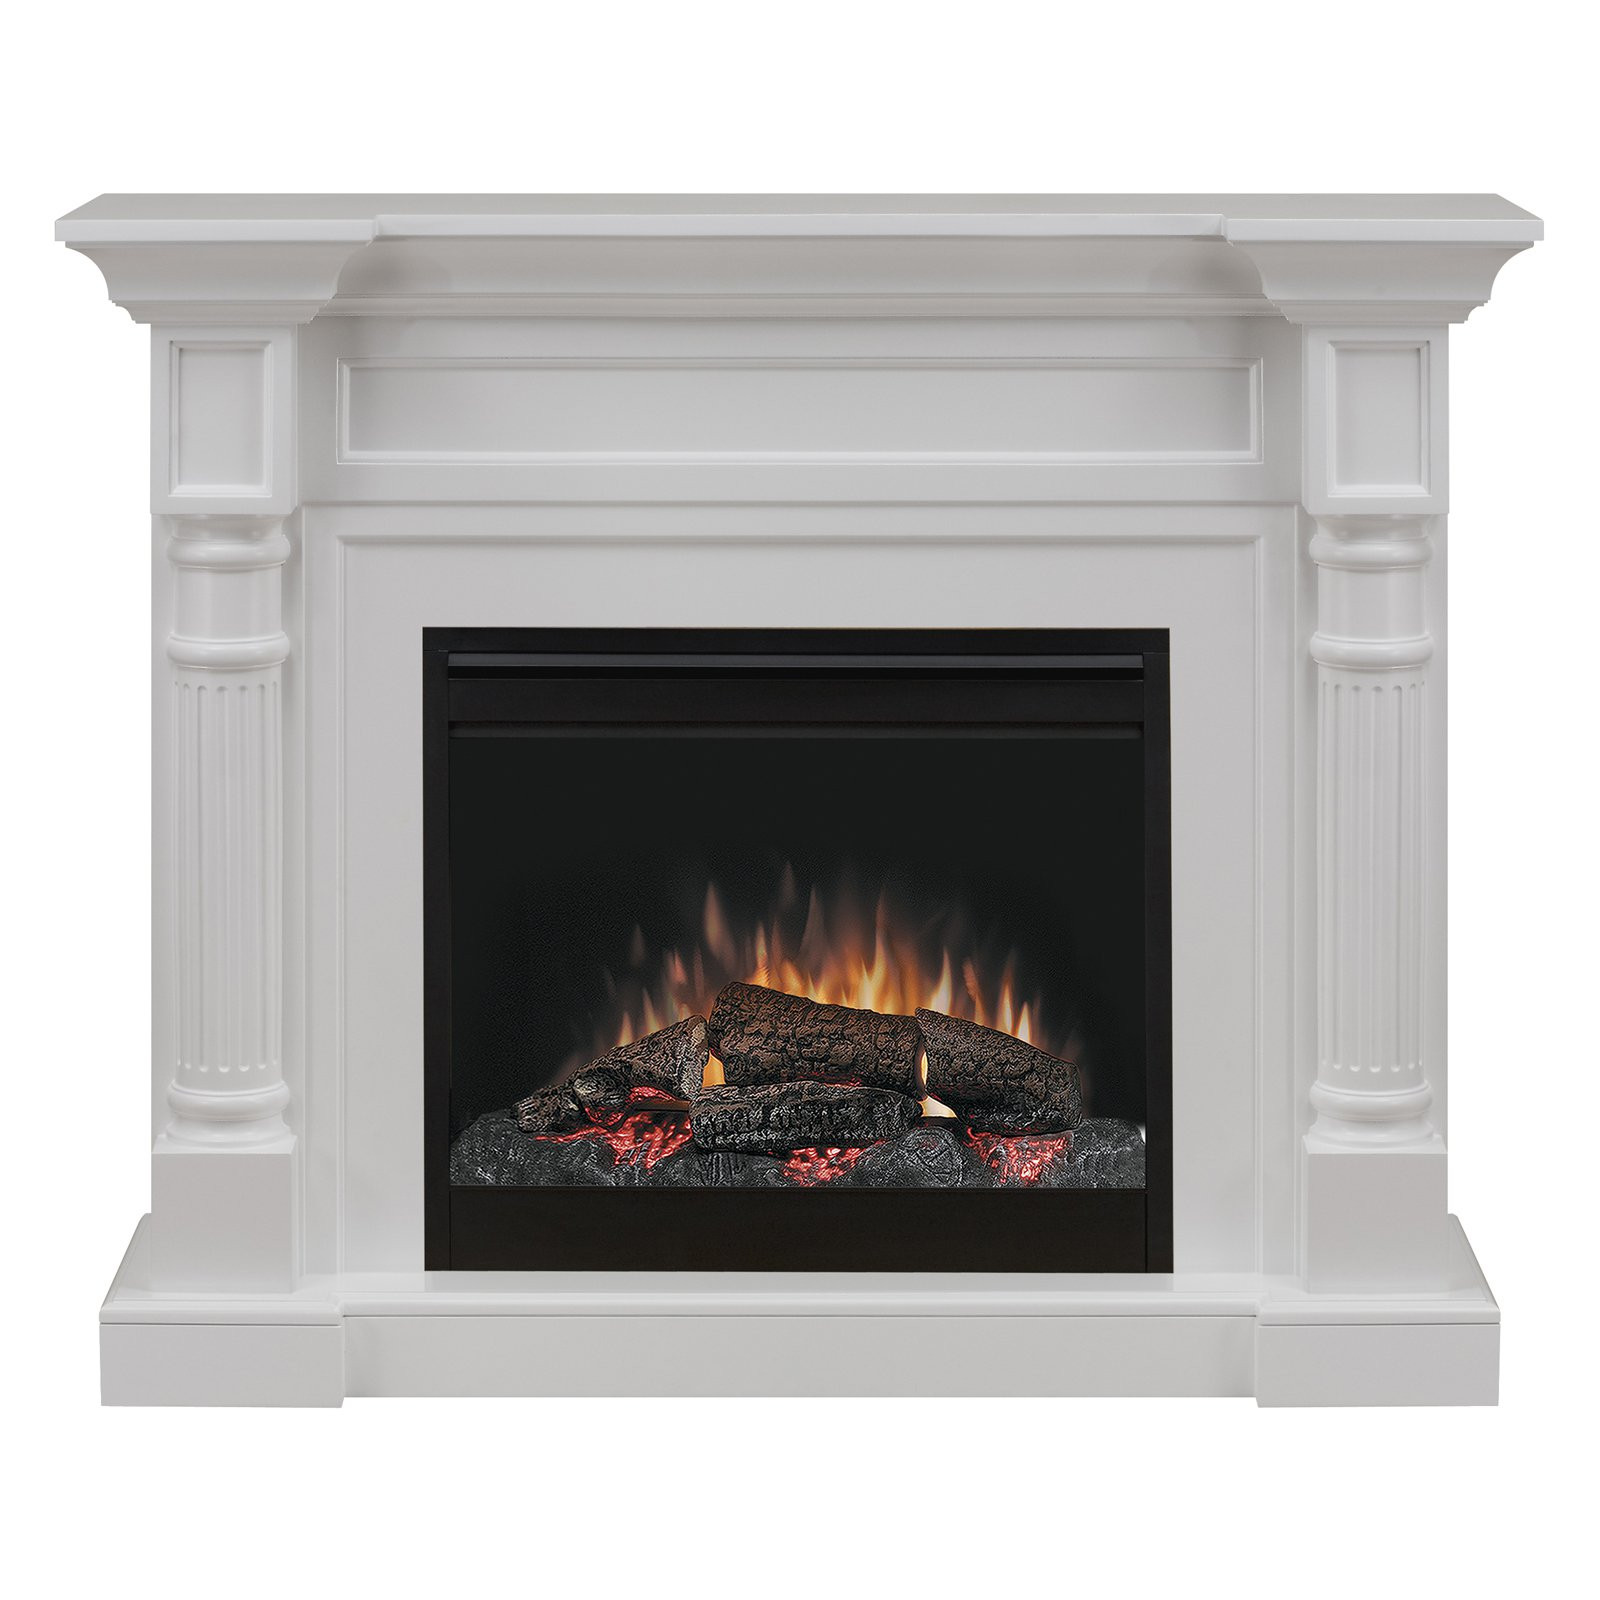 Dimplex White Electric Fireplace
 Dimplex Winston Mantel Electric Fireplace With Logs White